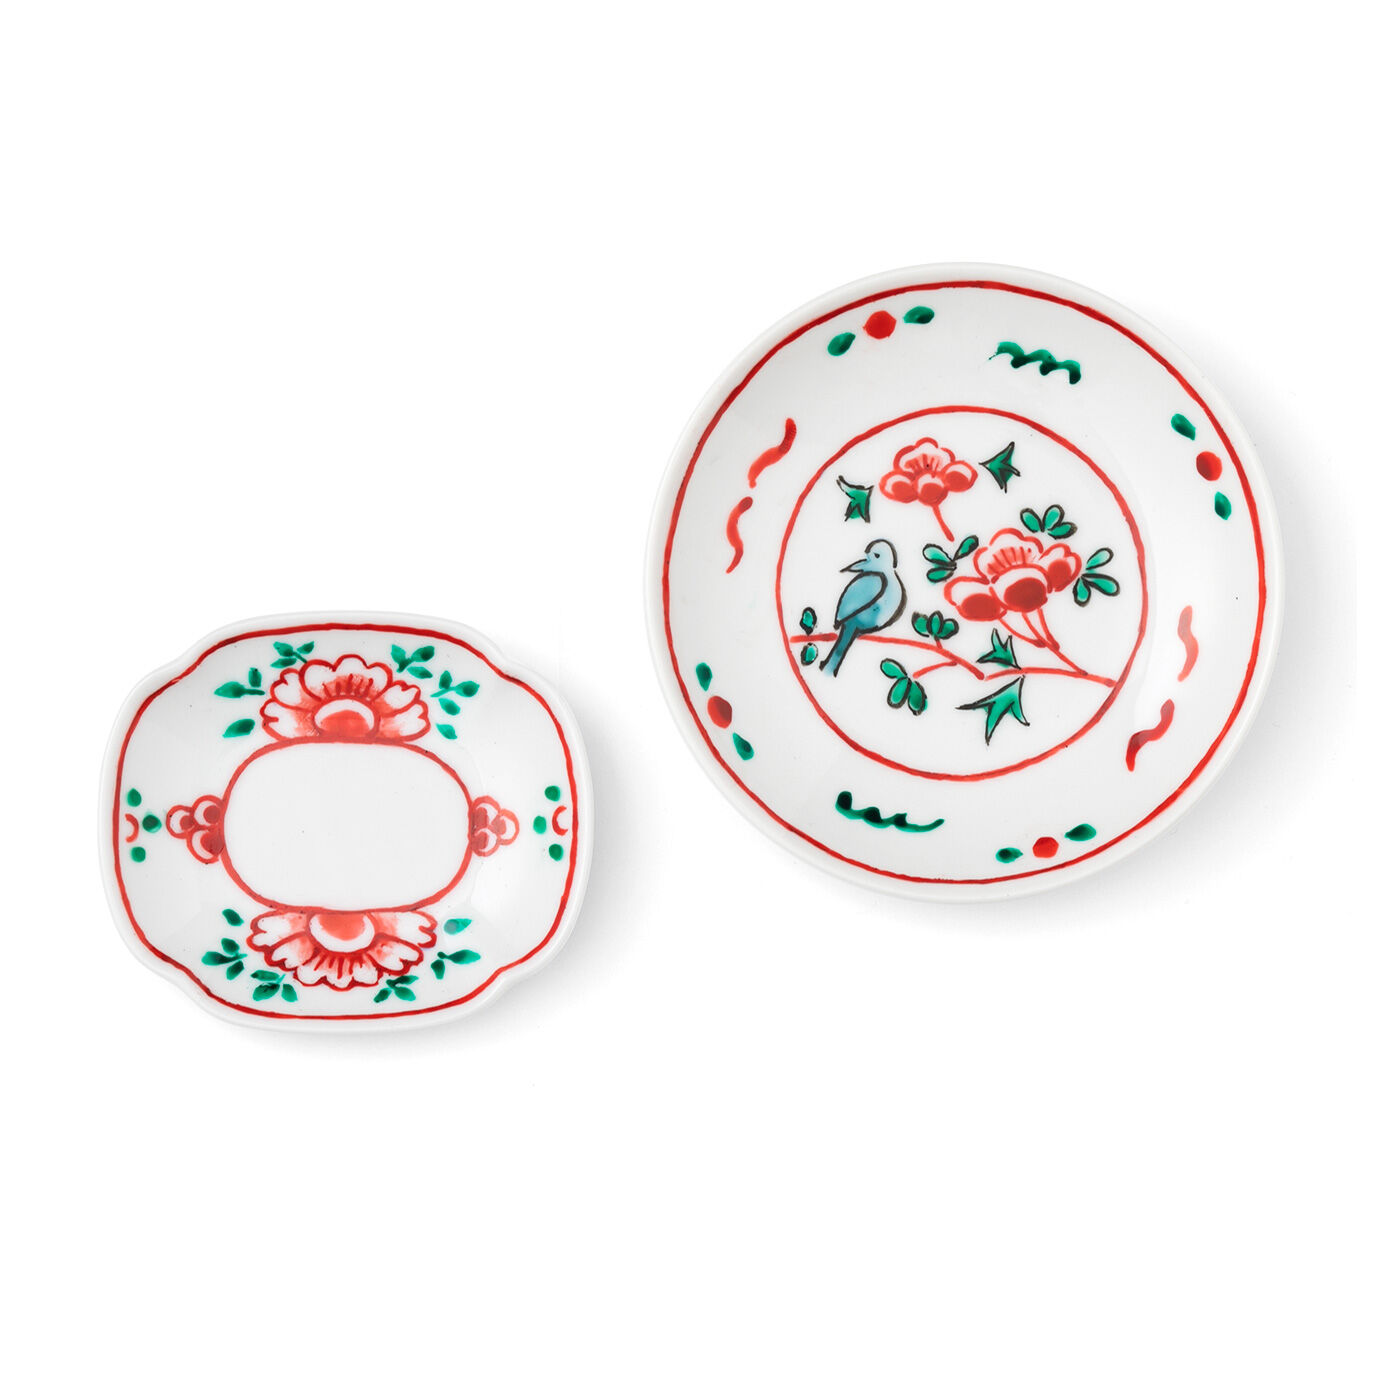 クチュリエ|おうちで絵付け体験 骨董風な絵柄を楽しむ 豆皿・小皿の会|牡丹と花鳥 1回のお届けで豆皿と小皿が作れます。